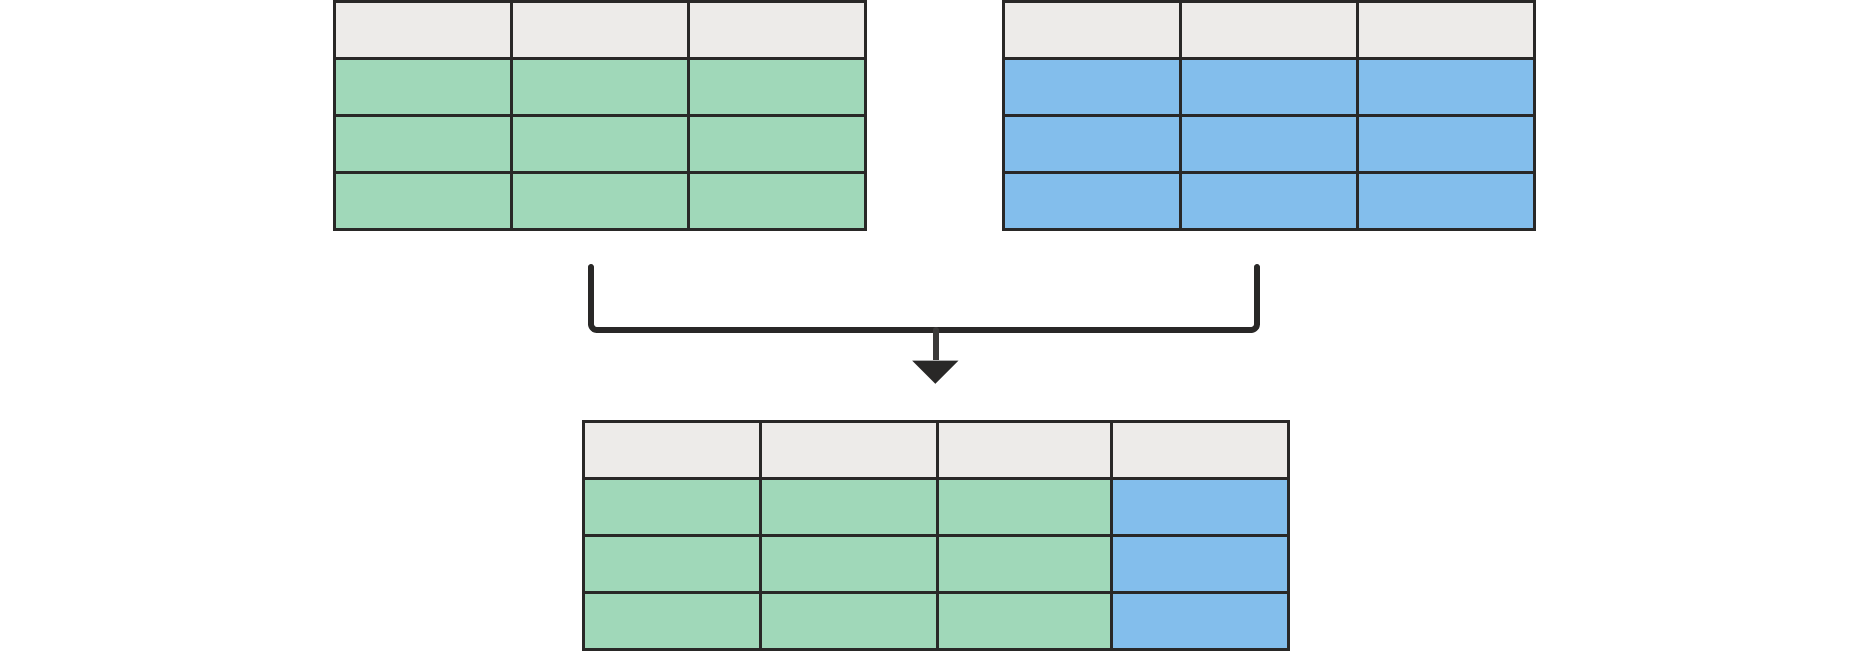 Diagrama mostrando duas tabelas vazias na parte superior mescladas a uma tabela na parte inferior com todas as colunas da tabela esquerda e uma da tabela direita.